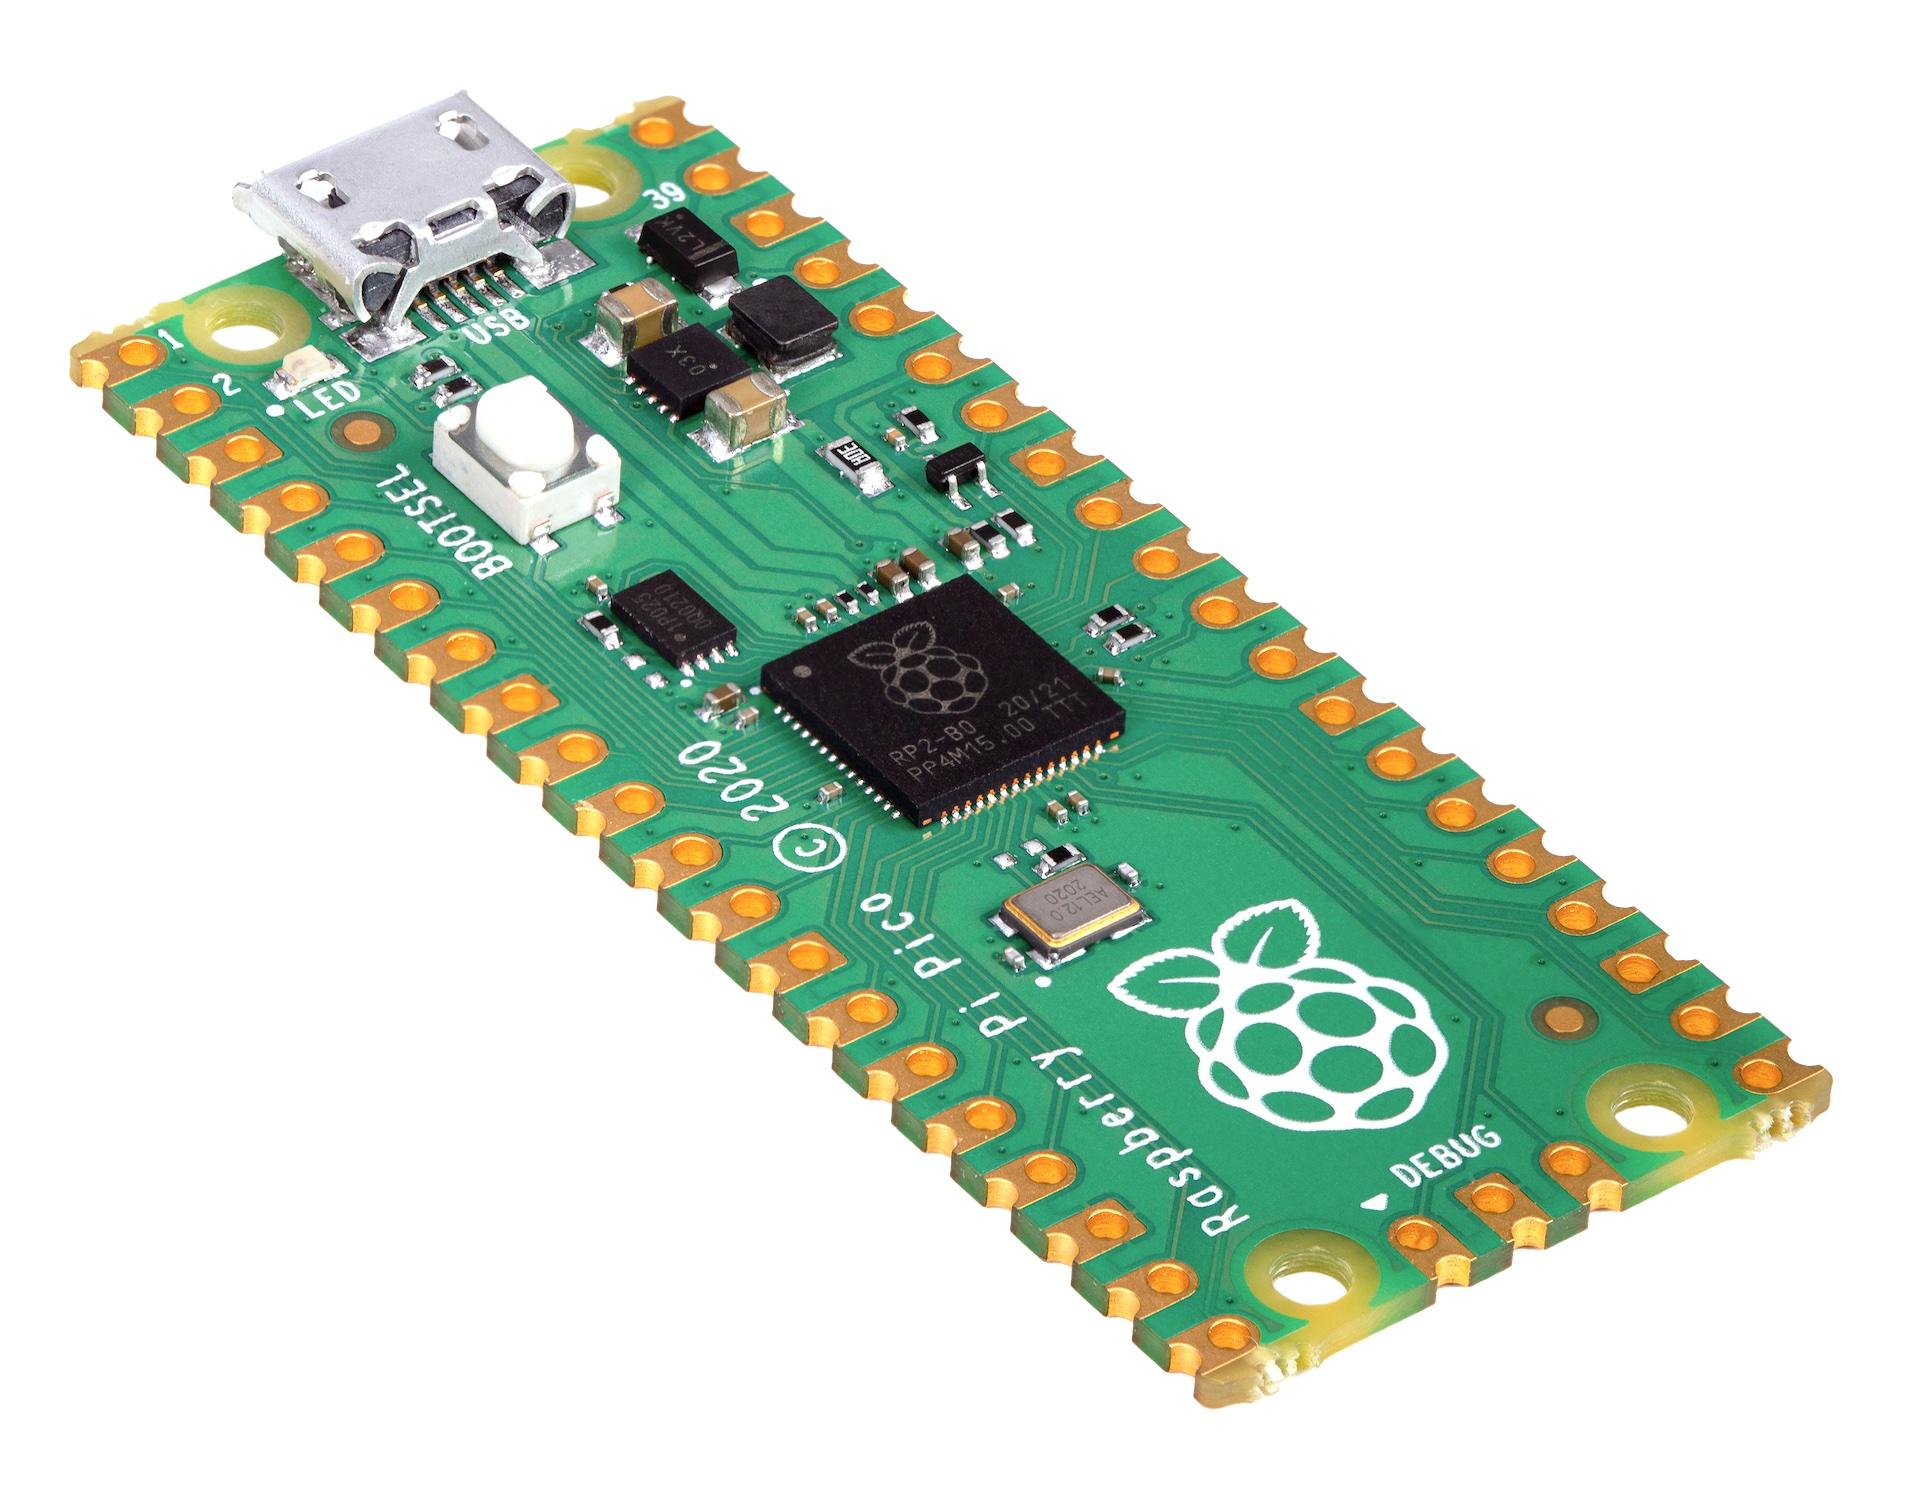 Raspberry Pi Pico, RP2040 Mikrocontroller-Board